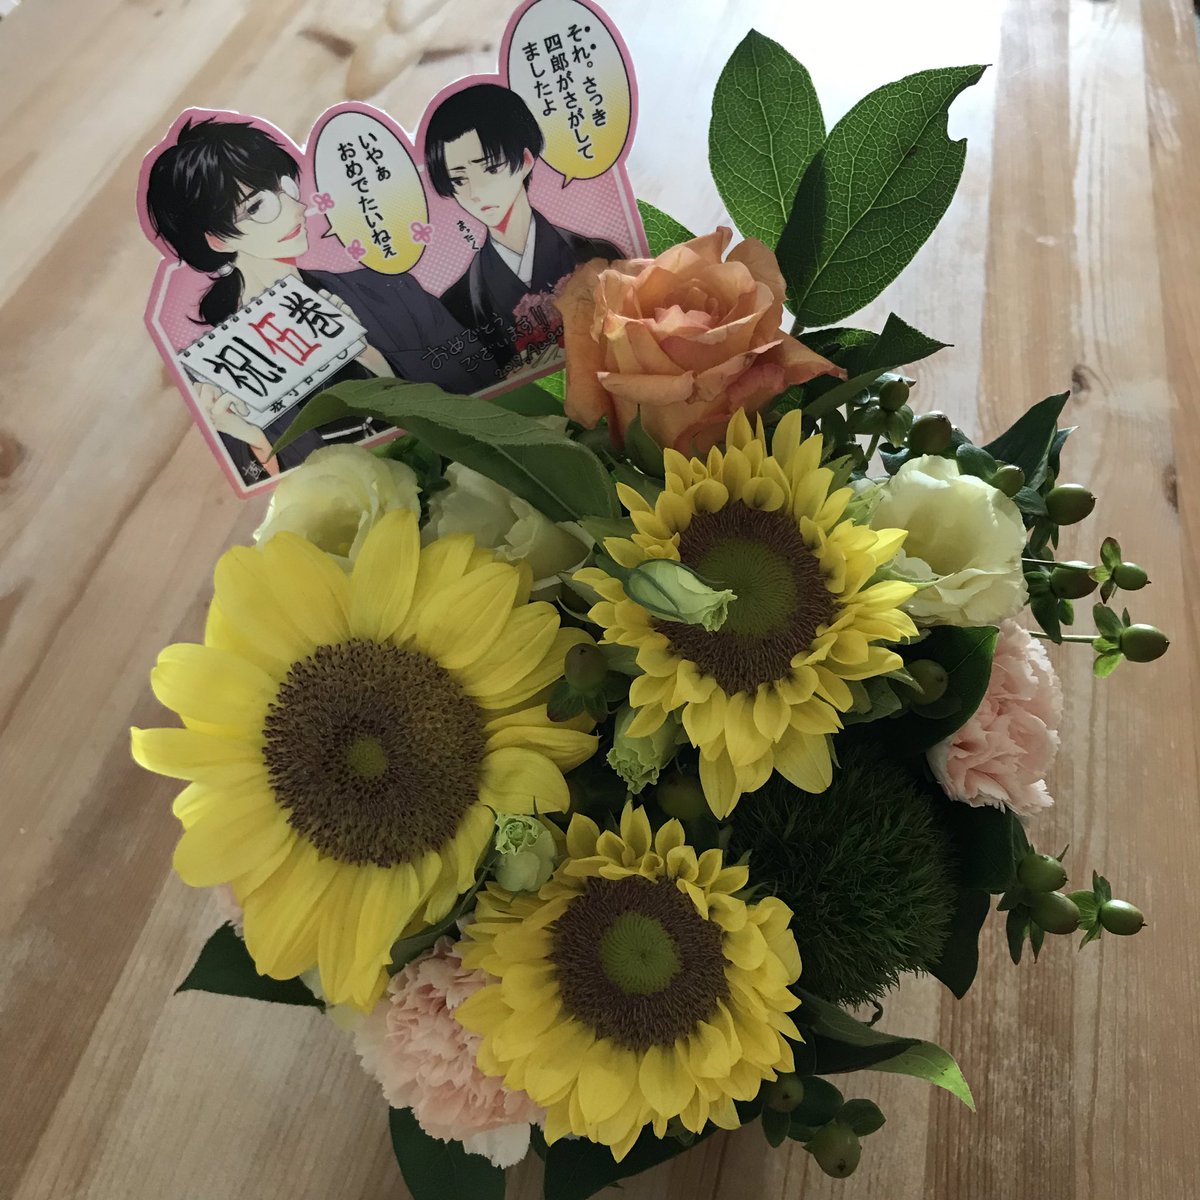 いつも原稿を手伝ってくれるSちゃんから花子5巻発売のお祝いにお花をいただきました。松田一・三郎兄弟付きです。すごいです、とてもイケメンです!とても嬉しくて、さっそく仕事場に飾りました。 